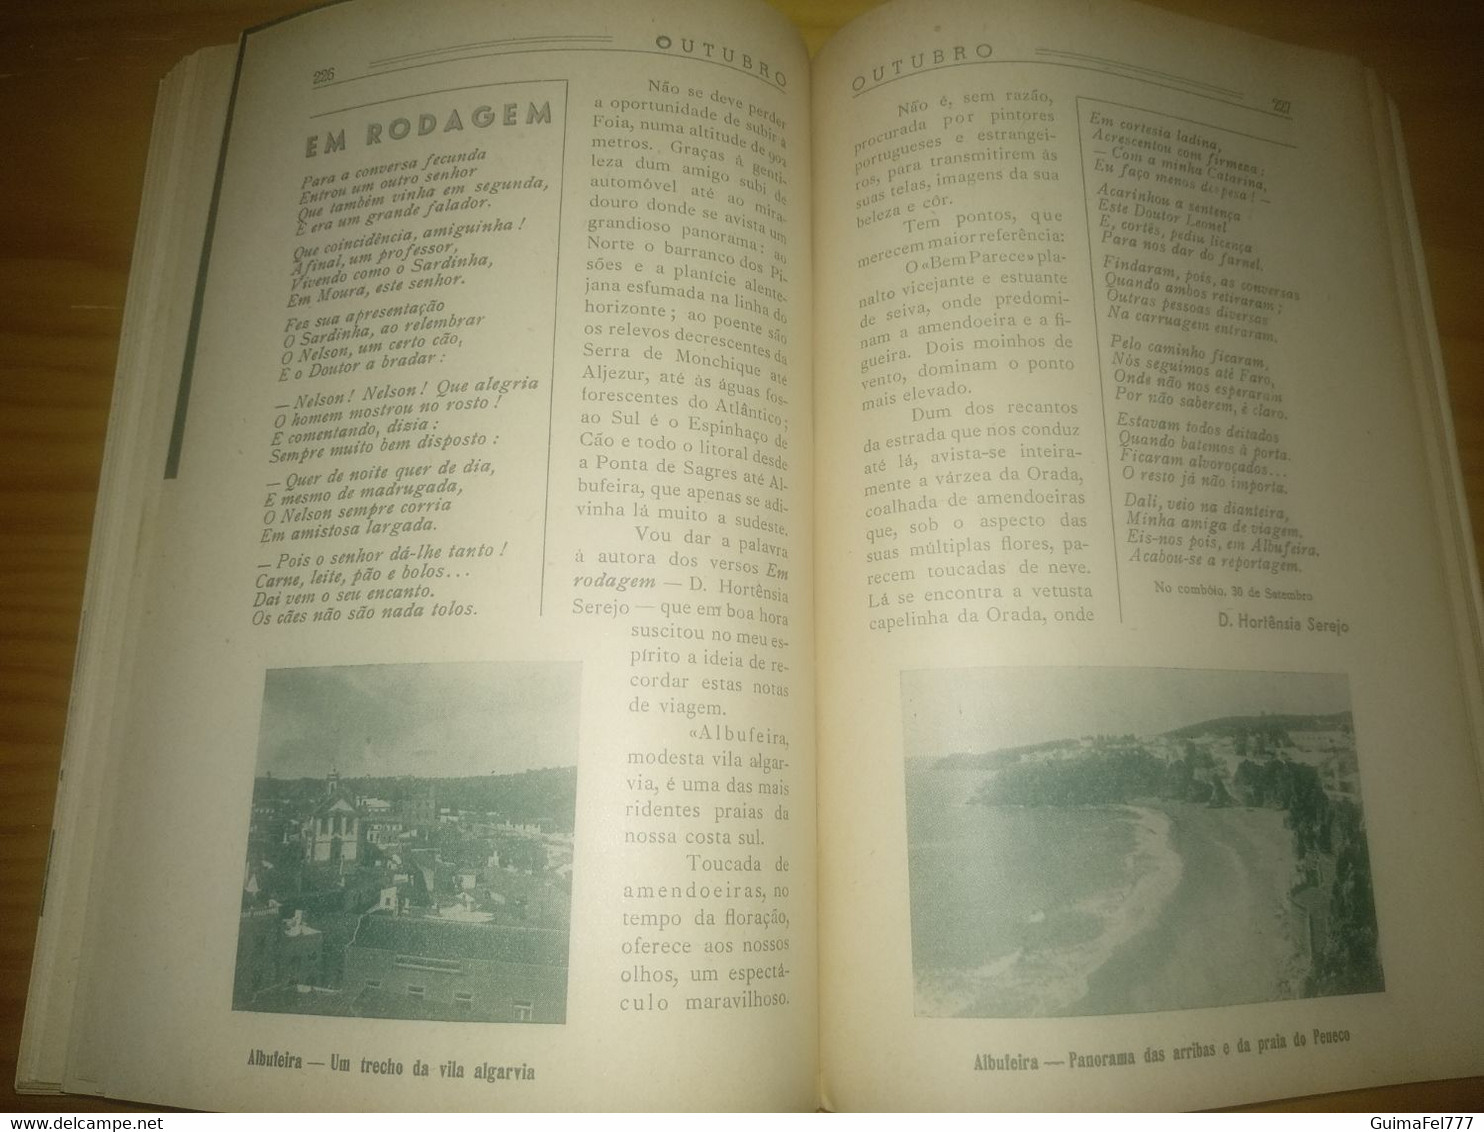 Almanaque Sto. António-Terras de Portugal, breves comentários sobre Lisboa, Coimbra, Sesimbra, Aveiro... Braga ano 1952